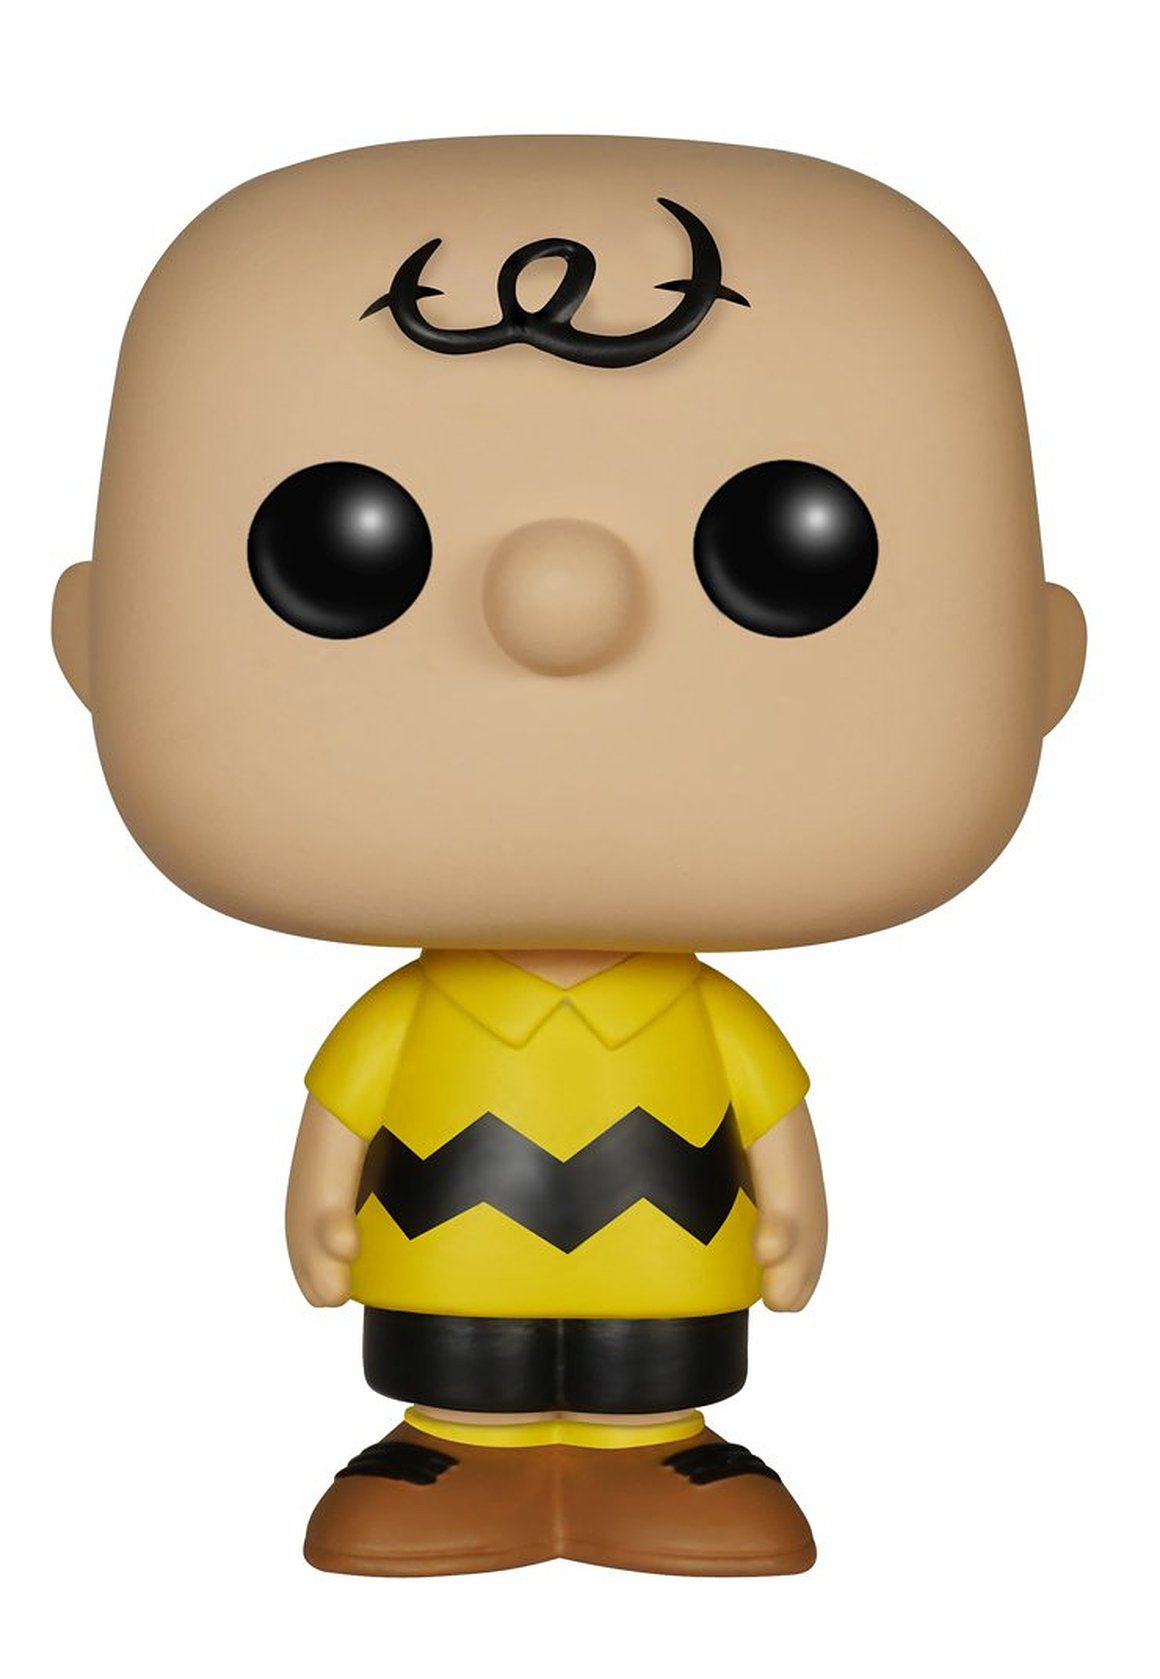 Funko POP Vinyl Figure Charlie Brown - image 1 of 2